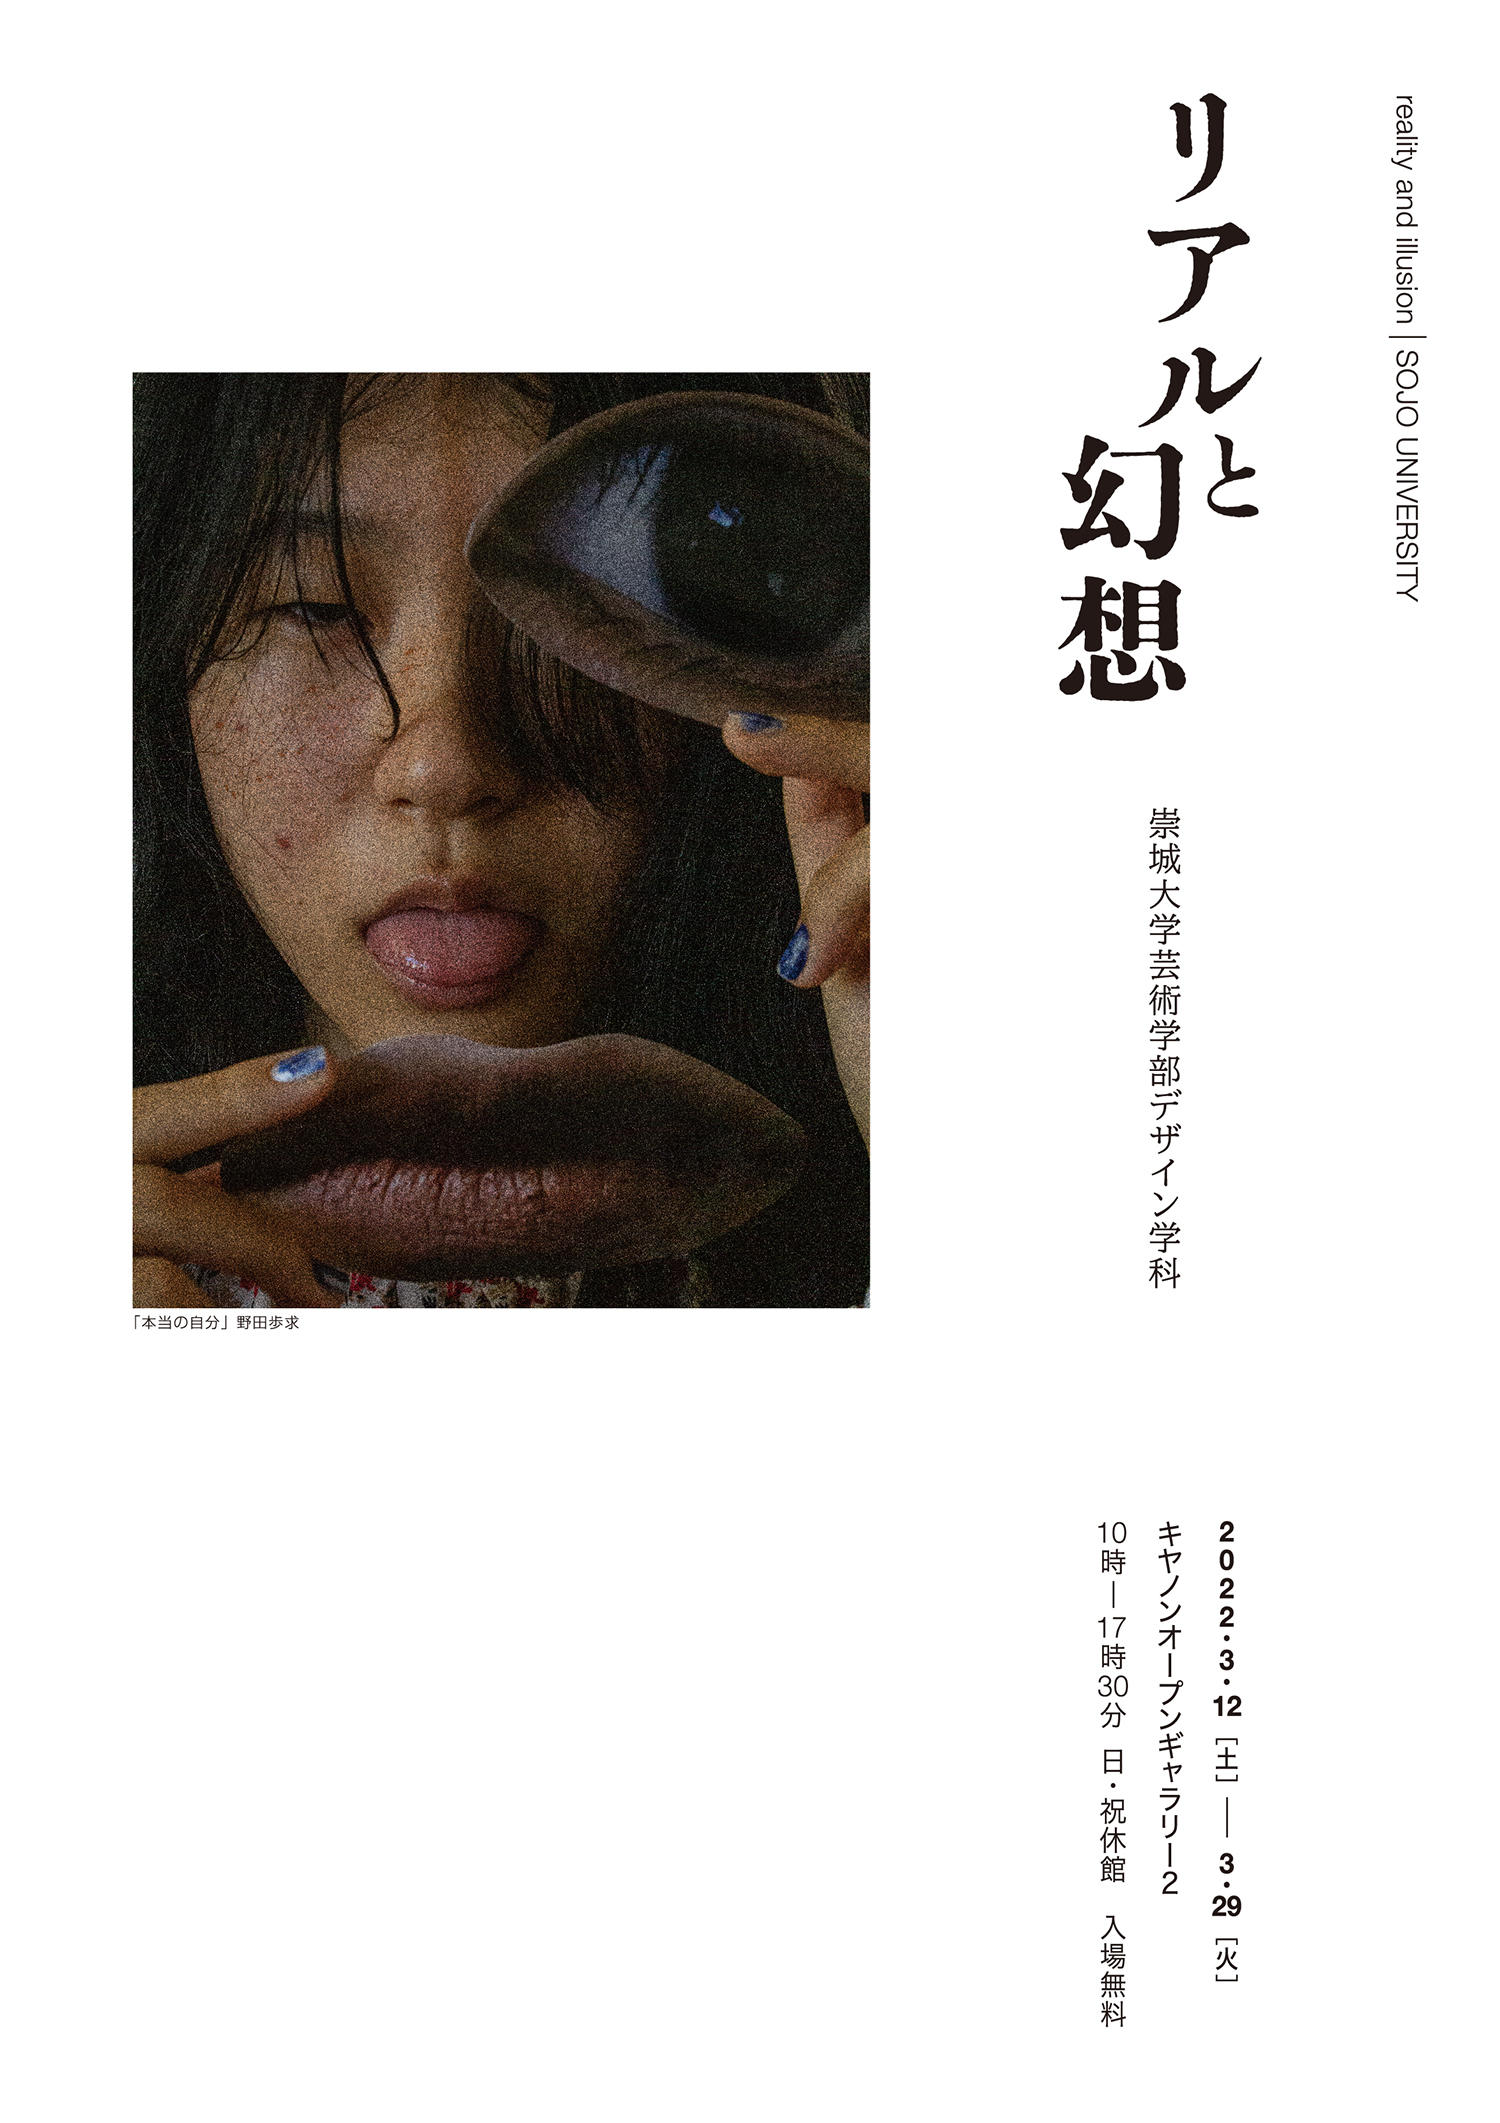 崇城大学 芸術学部 デザイン学科(熊本県) 学生写真展「リアルと幻想」 -- キヤノンギャラリー品川で開催